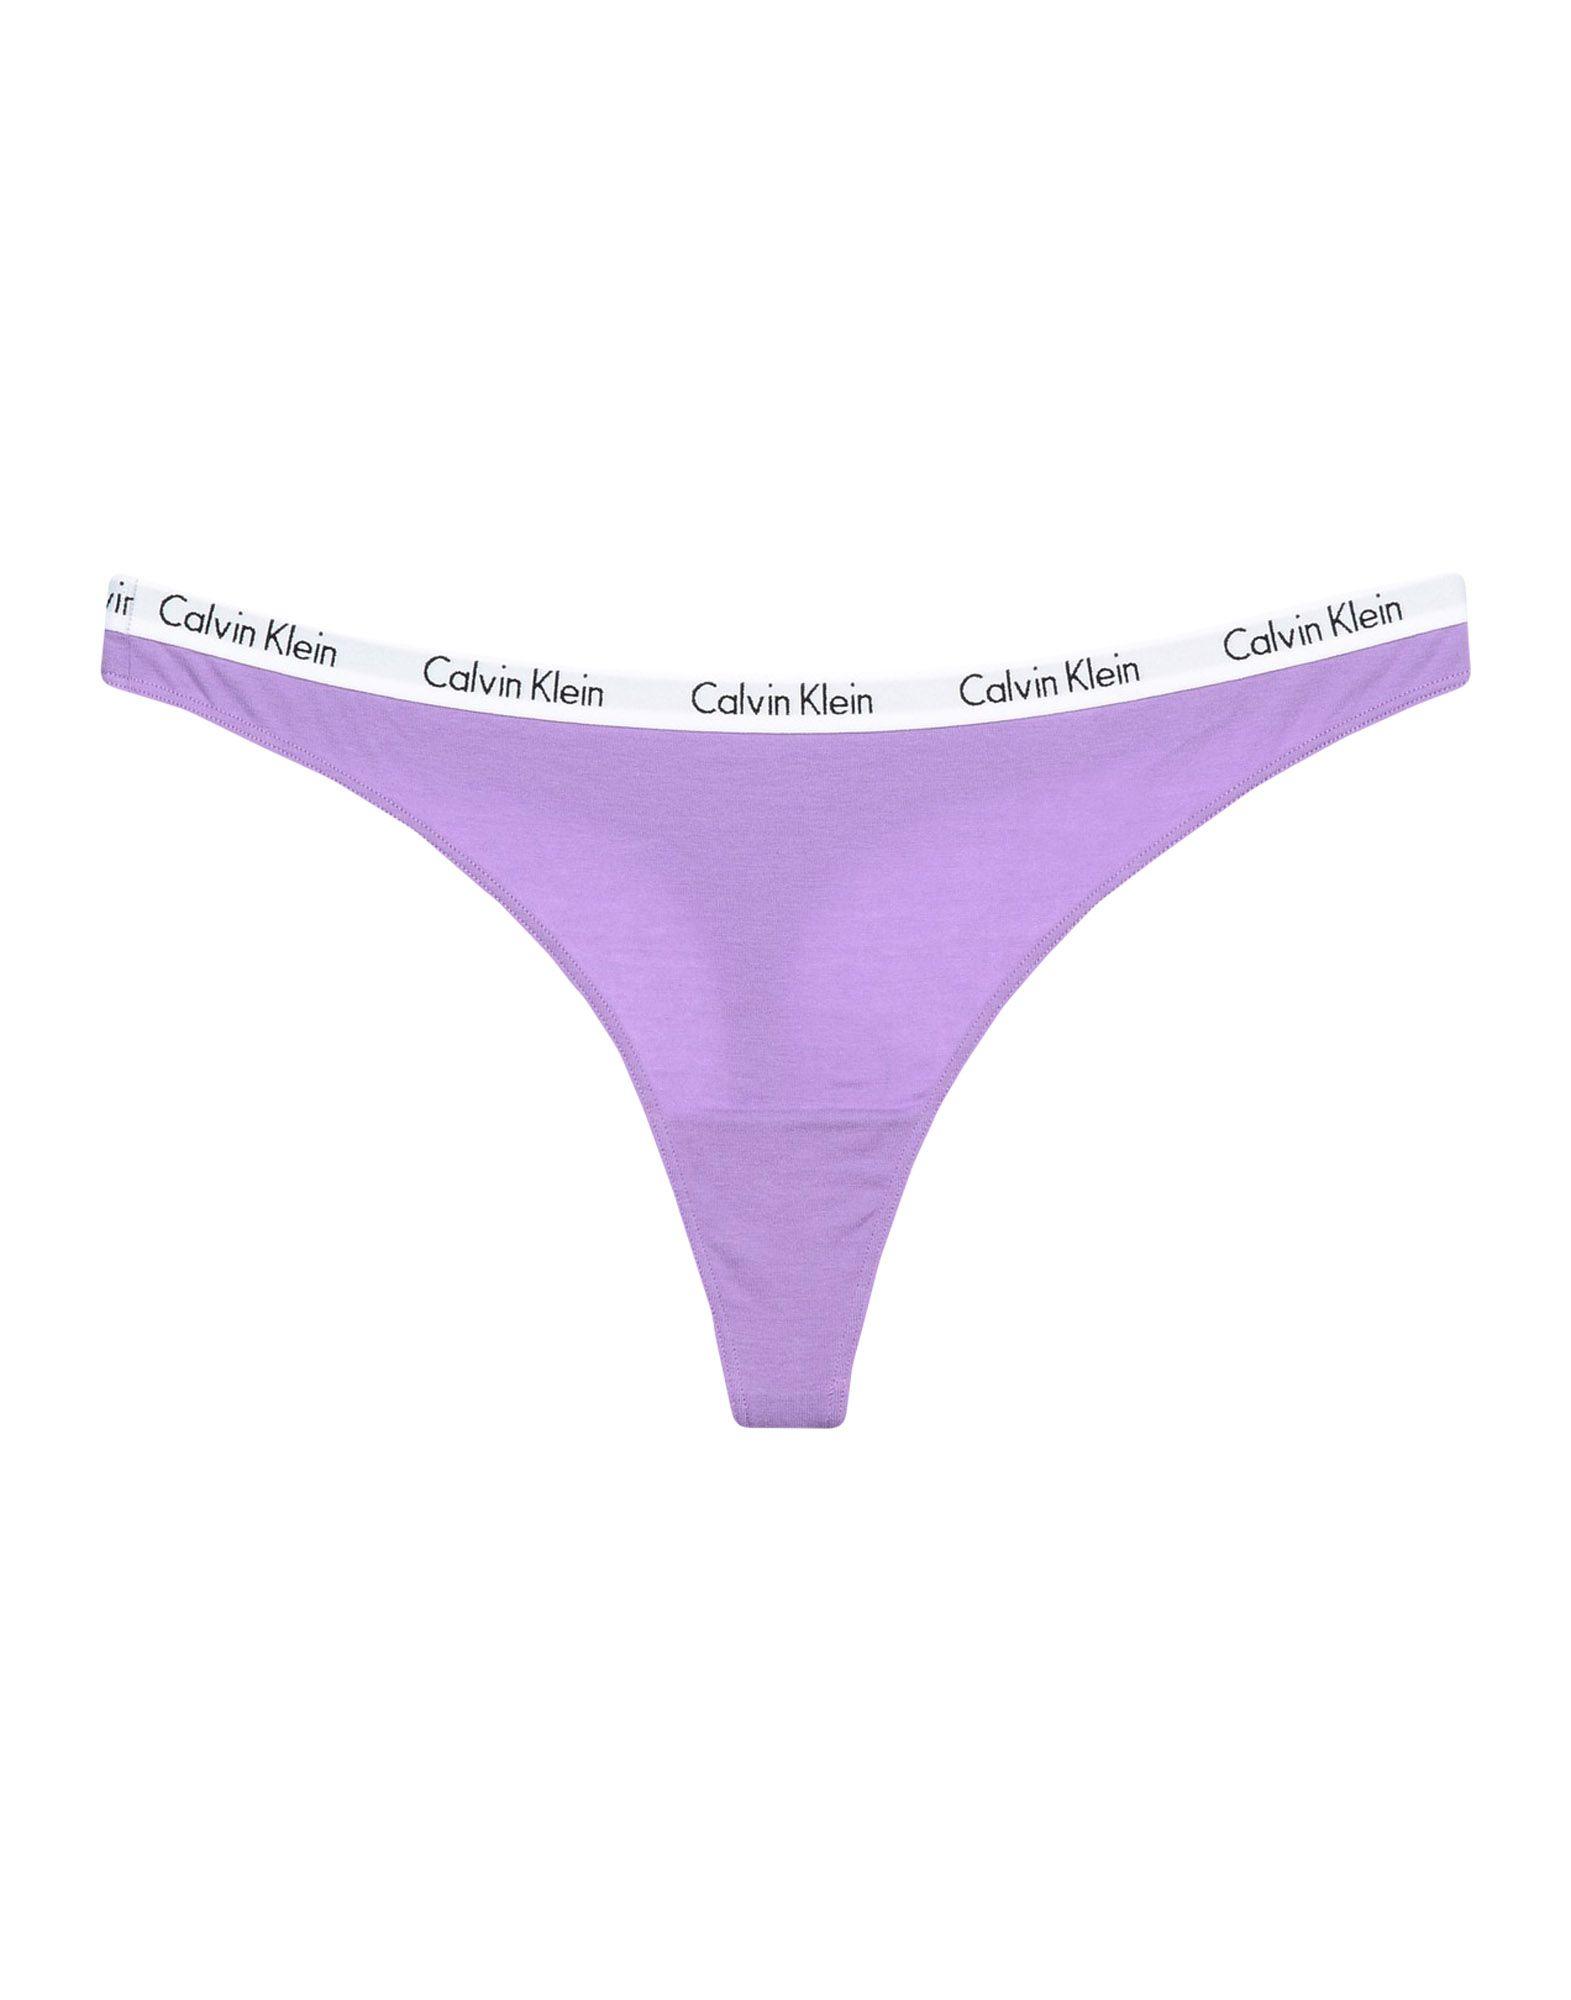 Calvin Klein Underwear Thongs In Light Purple | ModeSens